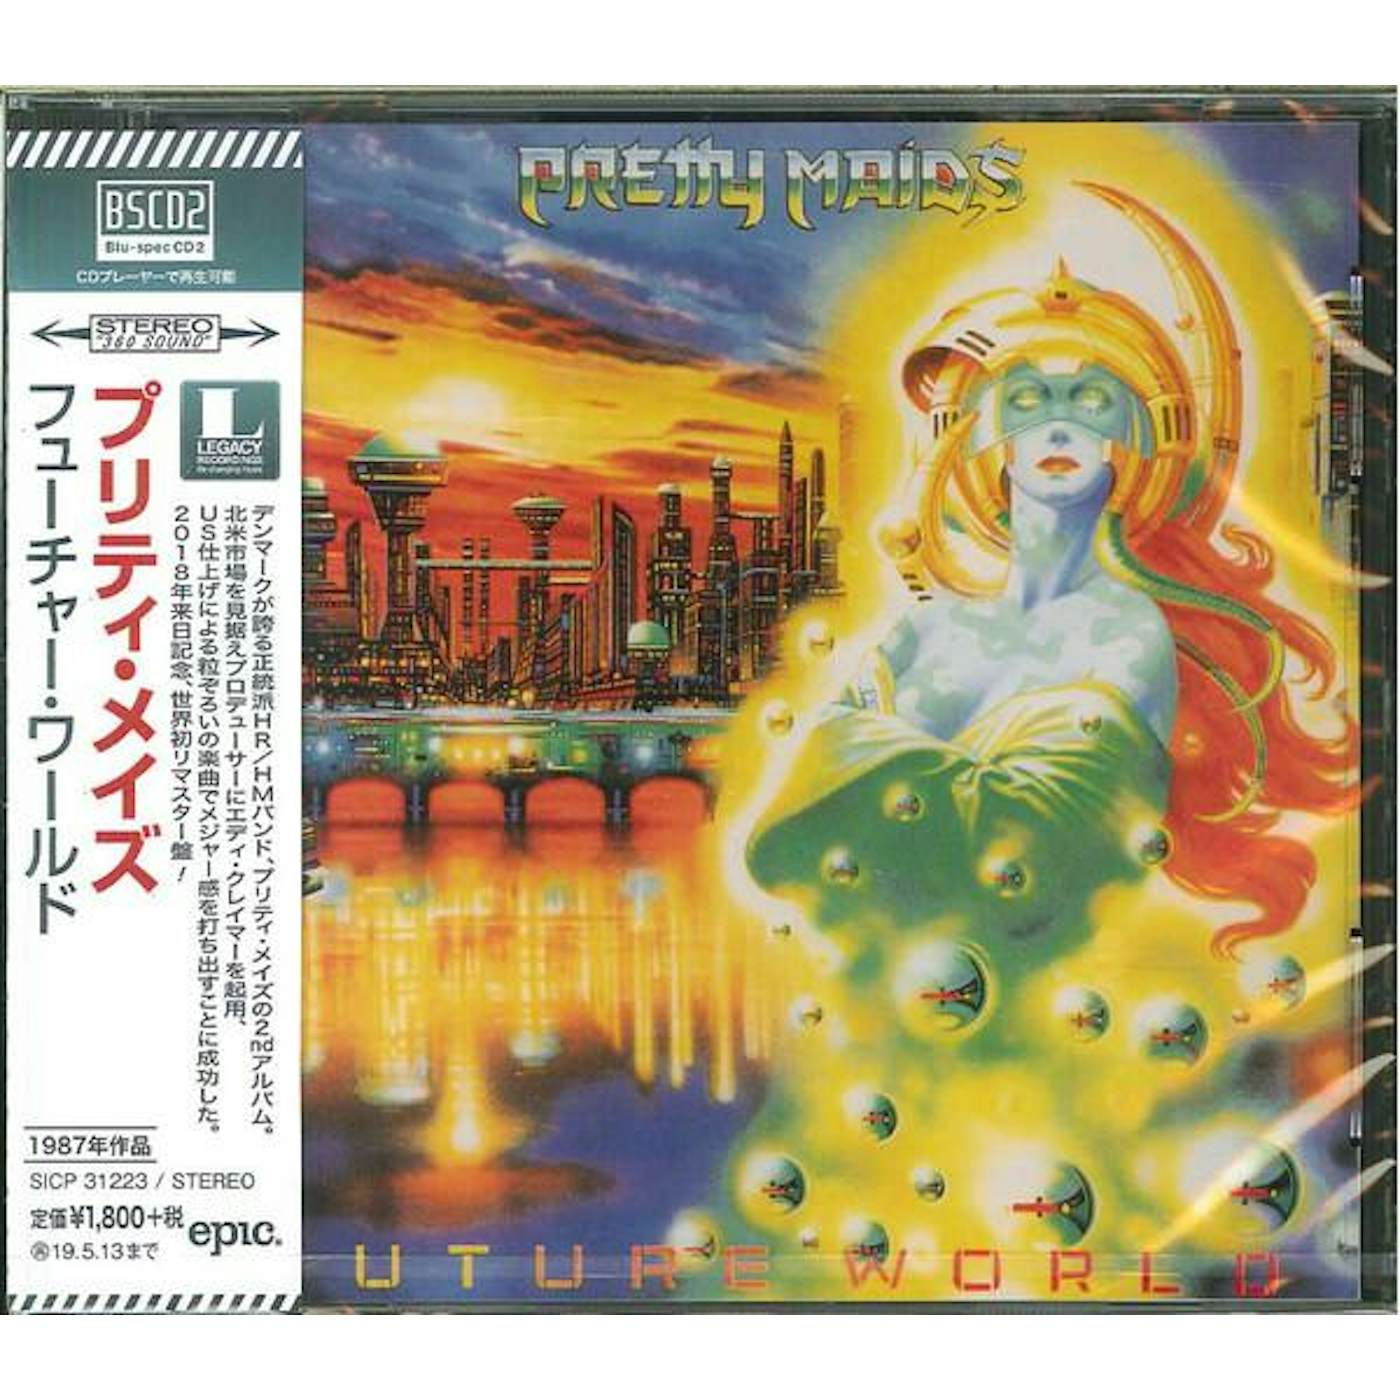 Pretty Maids FUTURE WORLD (BLU-SPECCD2/REMASTER) CD